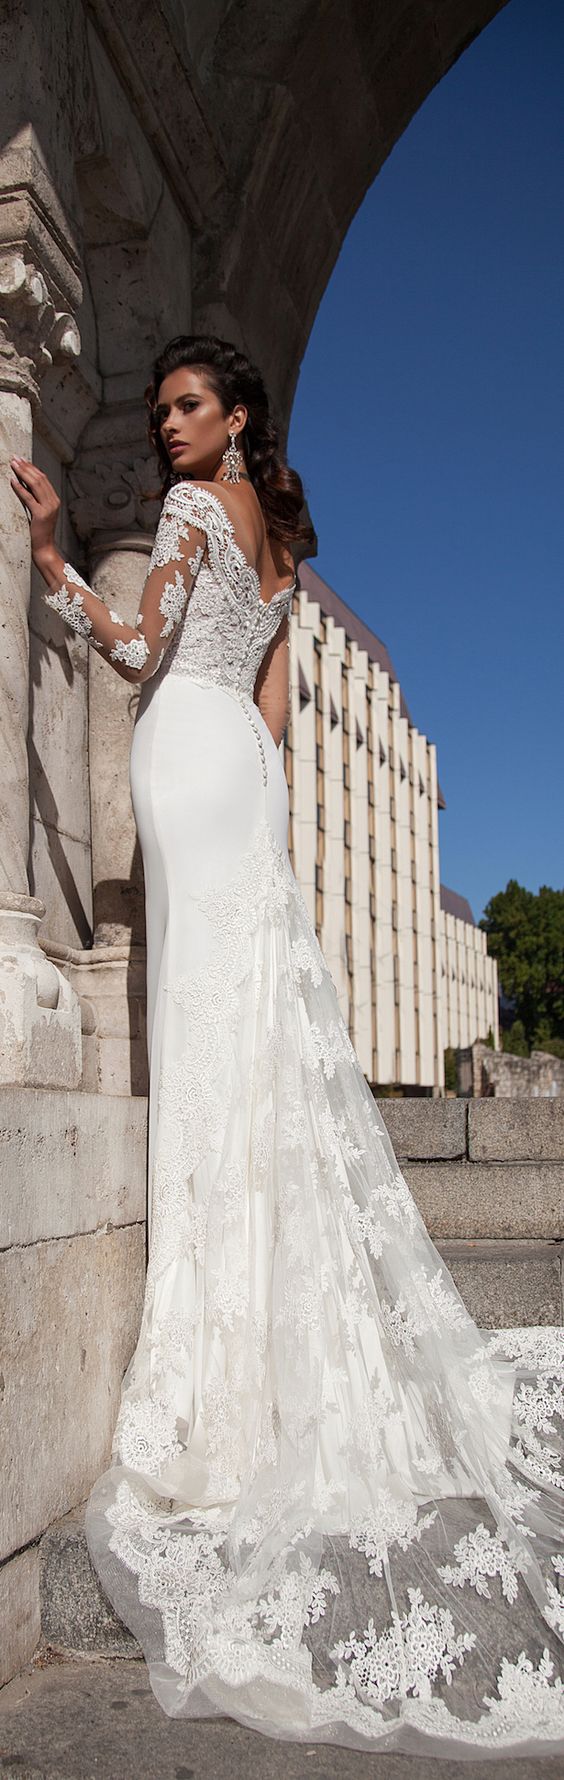 Milla Nova 2016 long sleeves wedding dresses